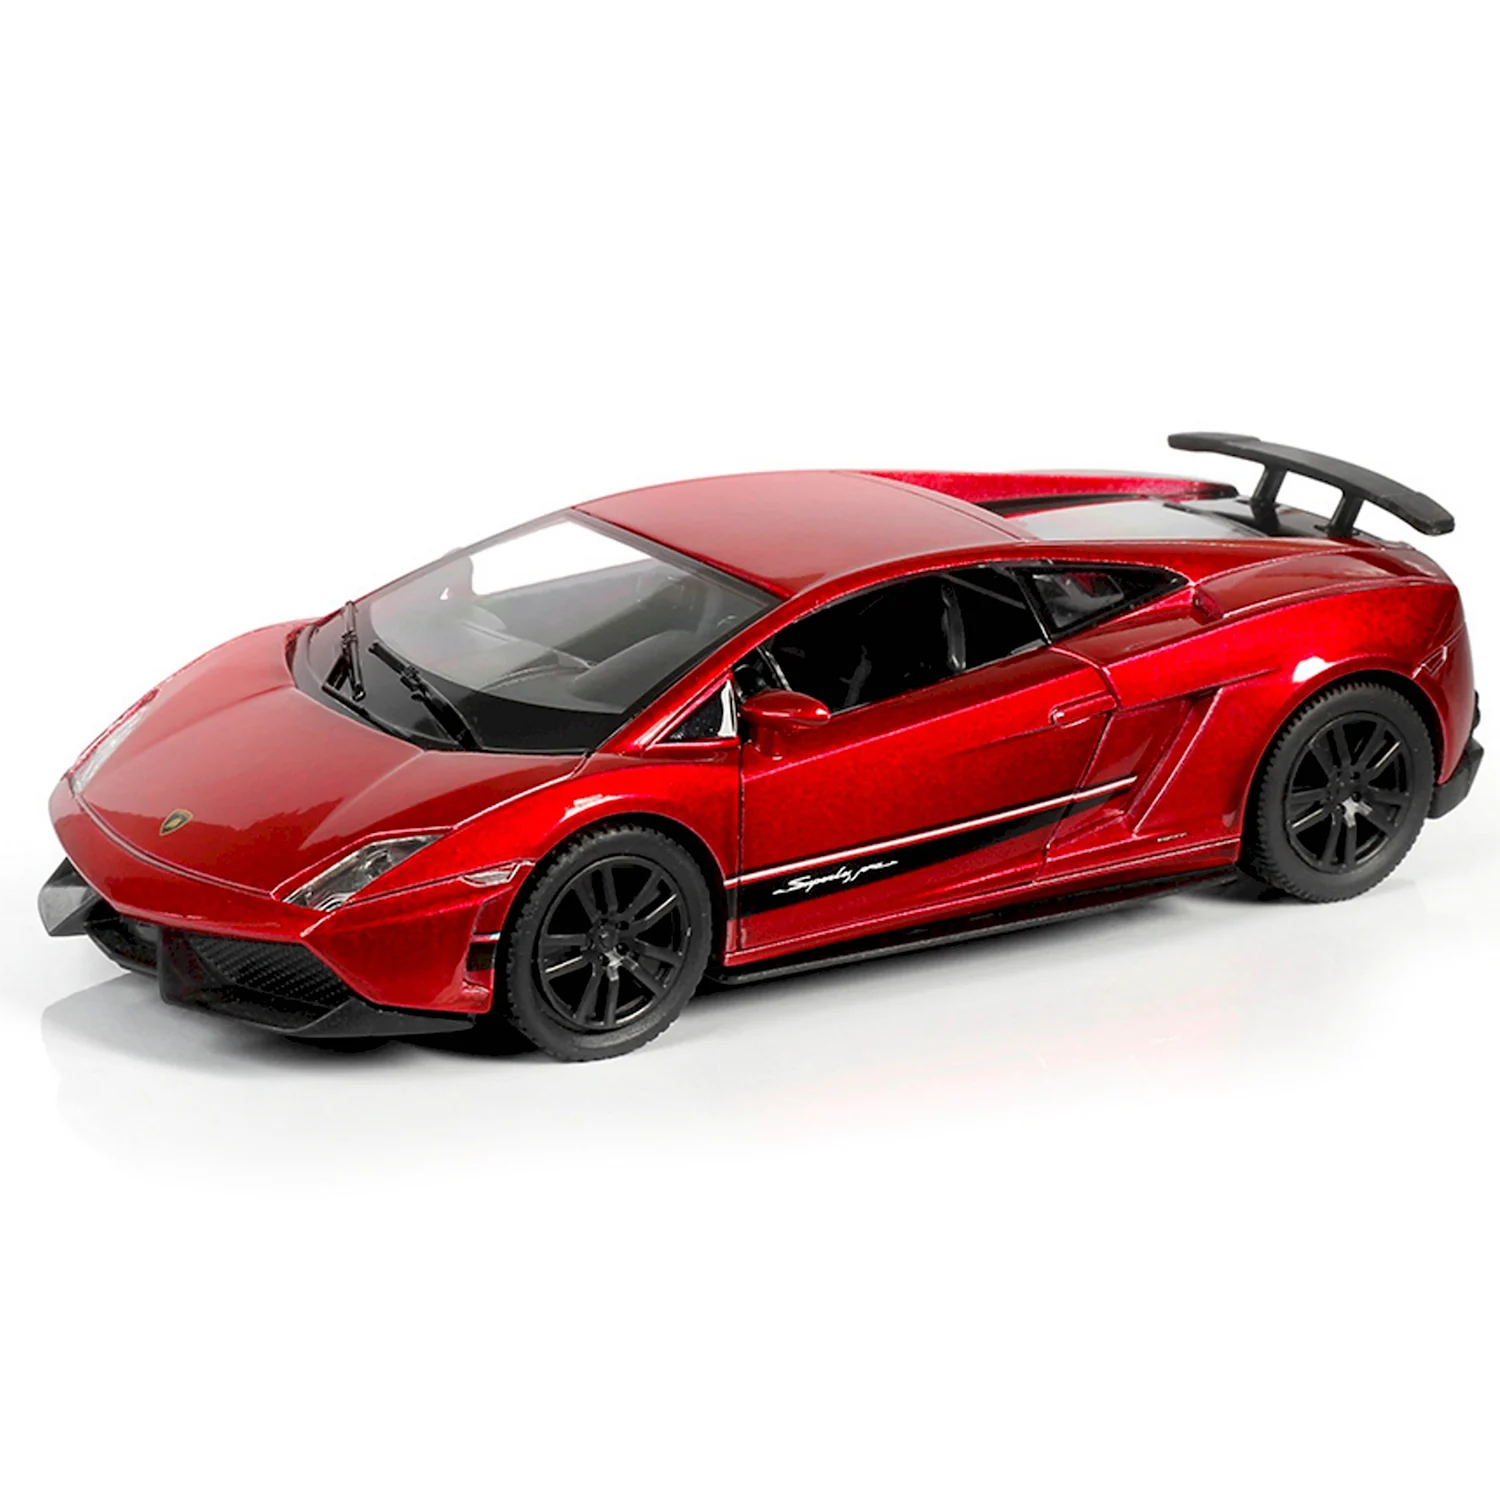 Lamborghini-Gallardo-lp570-4-Superleggera-RMZ City 132